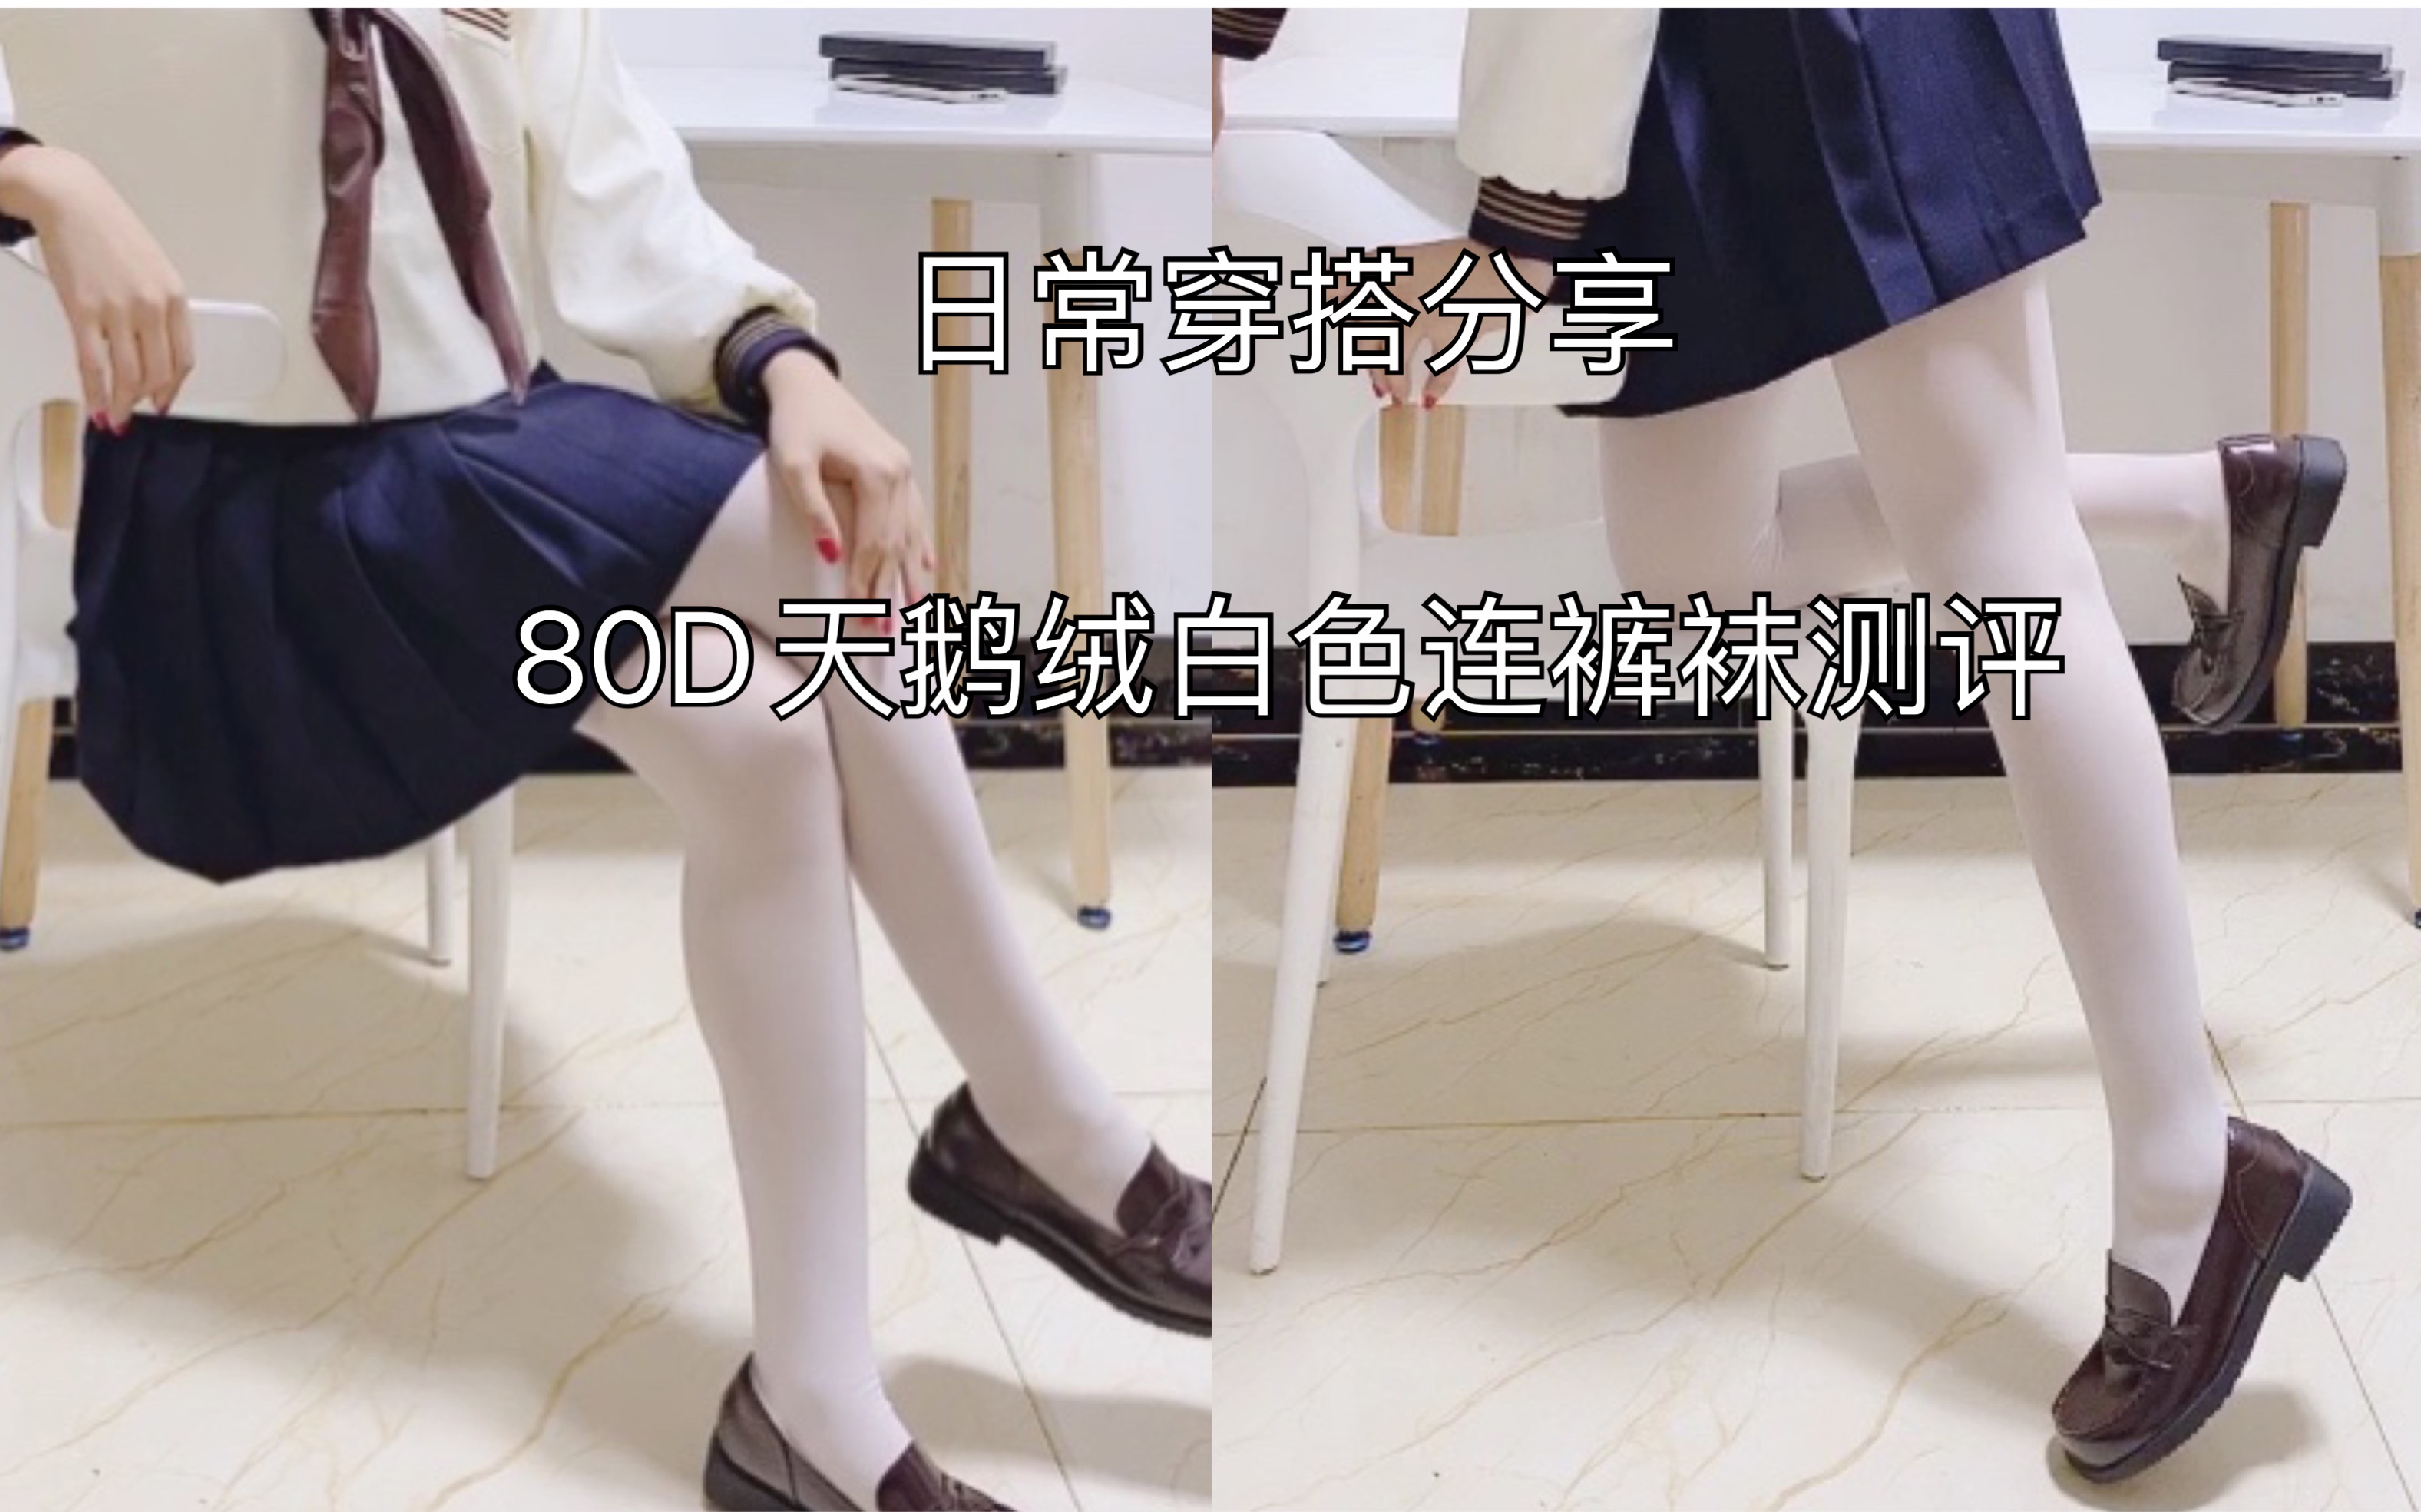 白裤袜学生-图库-五毛网